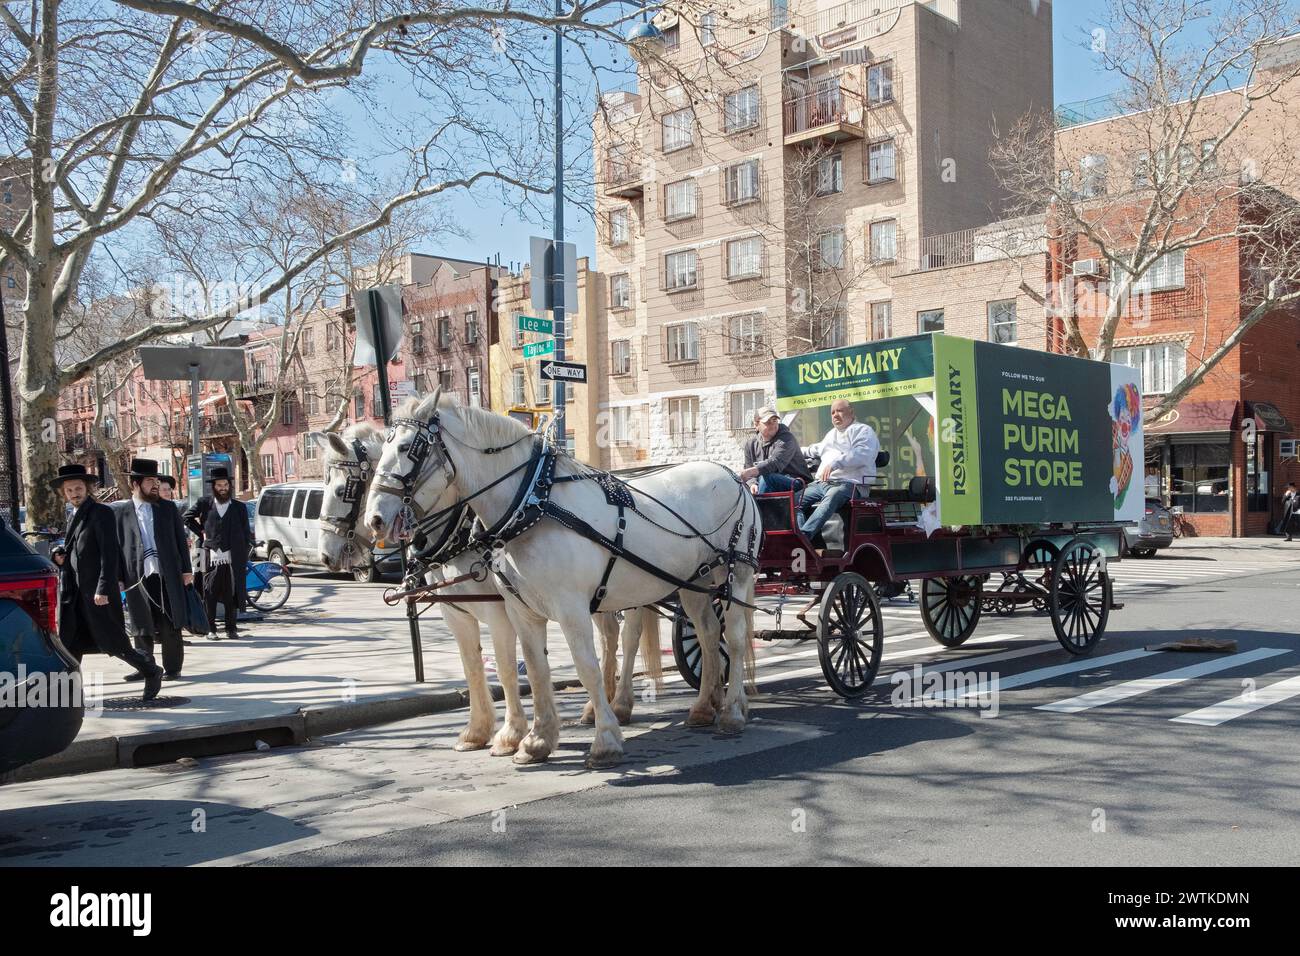 Eine Pferdekarre, die für den Rosemary Kosher Supermarkt, einen Ort, an dem Lebensmittel und Spielzeug für den Purim-Urlaub gekauft werden, wirbt. Auf der Lee Avenue in Brooklyn, NY. Stockfoto